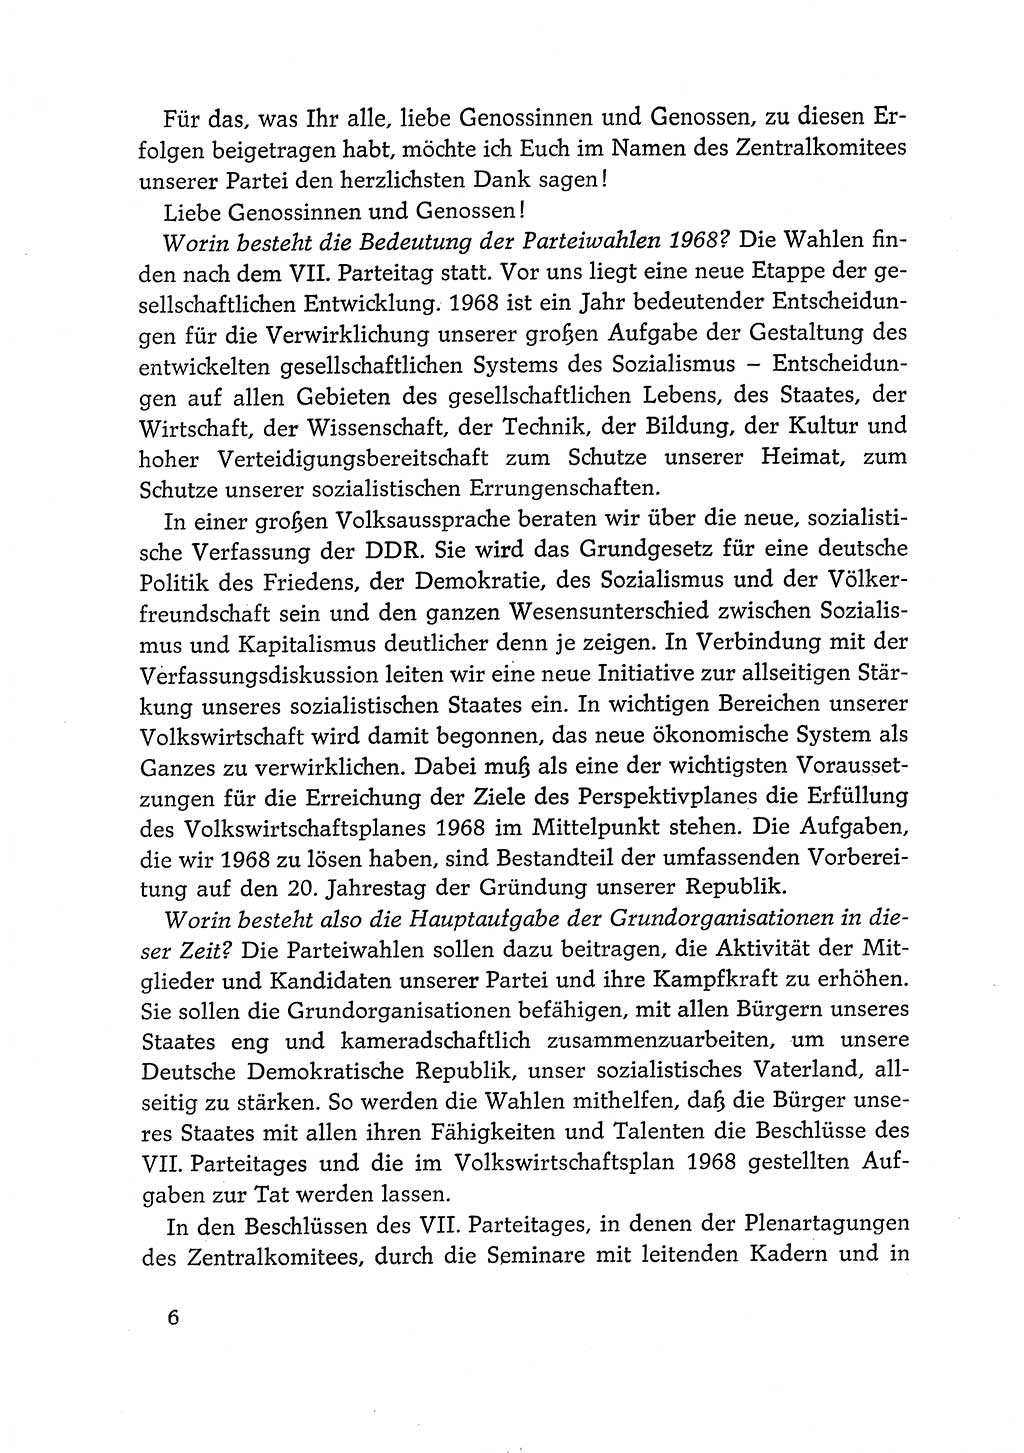 Dokumente der Sozialistischen Einheitspartei Deutschlands (SED) [Deutsche Demokratische Republik (DDR)] 1968-1969, Seite 6 (Dok. SED DDR 1968-1969, S. 6)